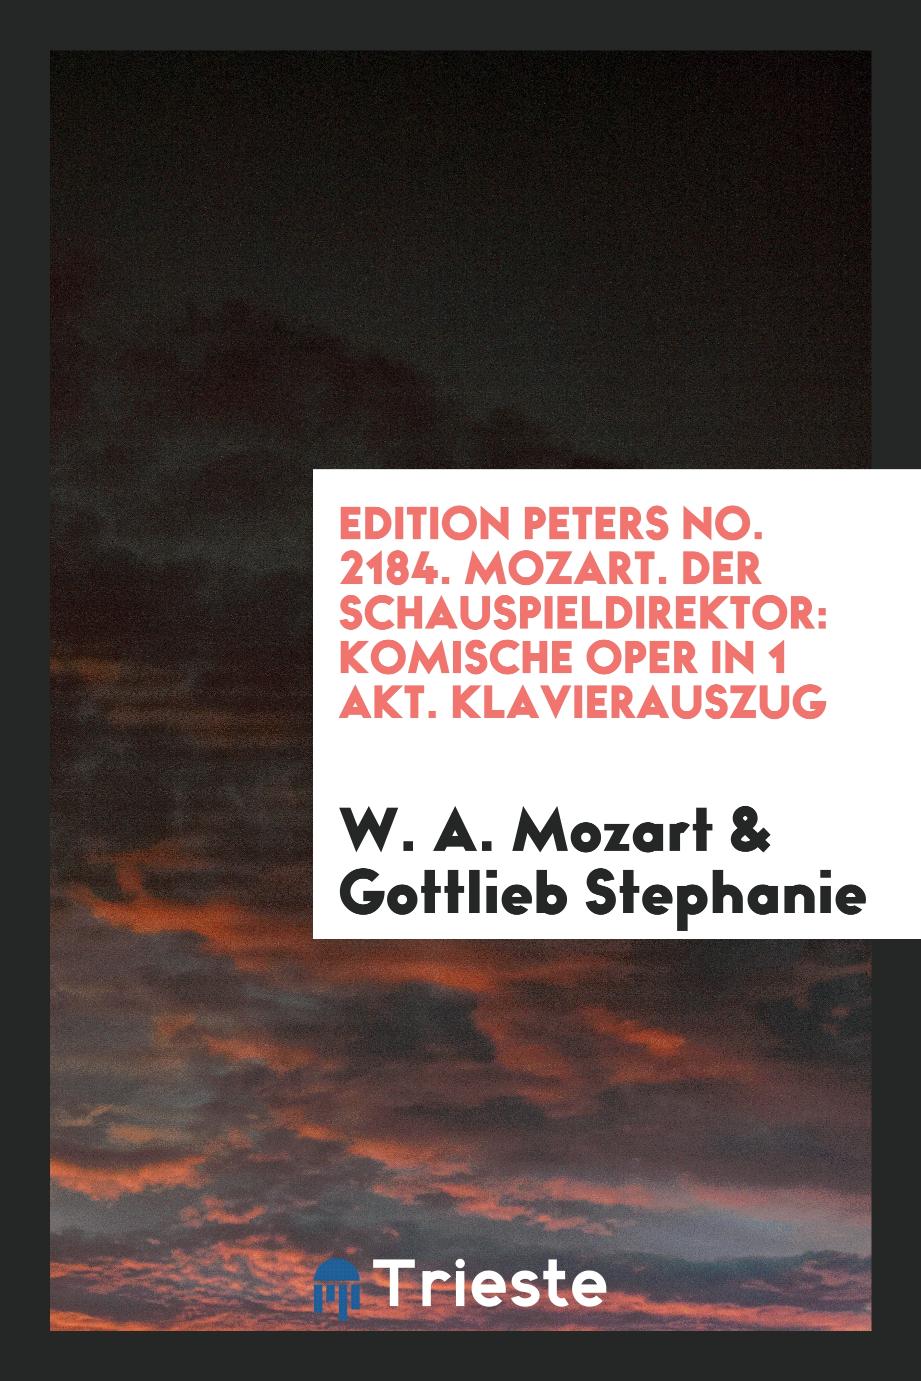 Edition Peters No. 2184. Mozart. Der Schauspieldirektor: Komische Oper in 1 Akt. Klavierauszug